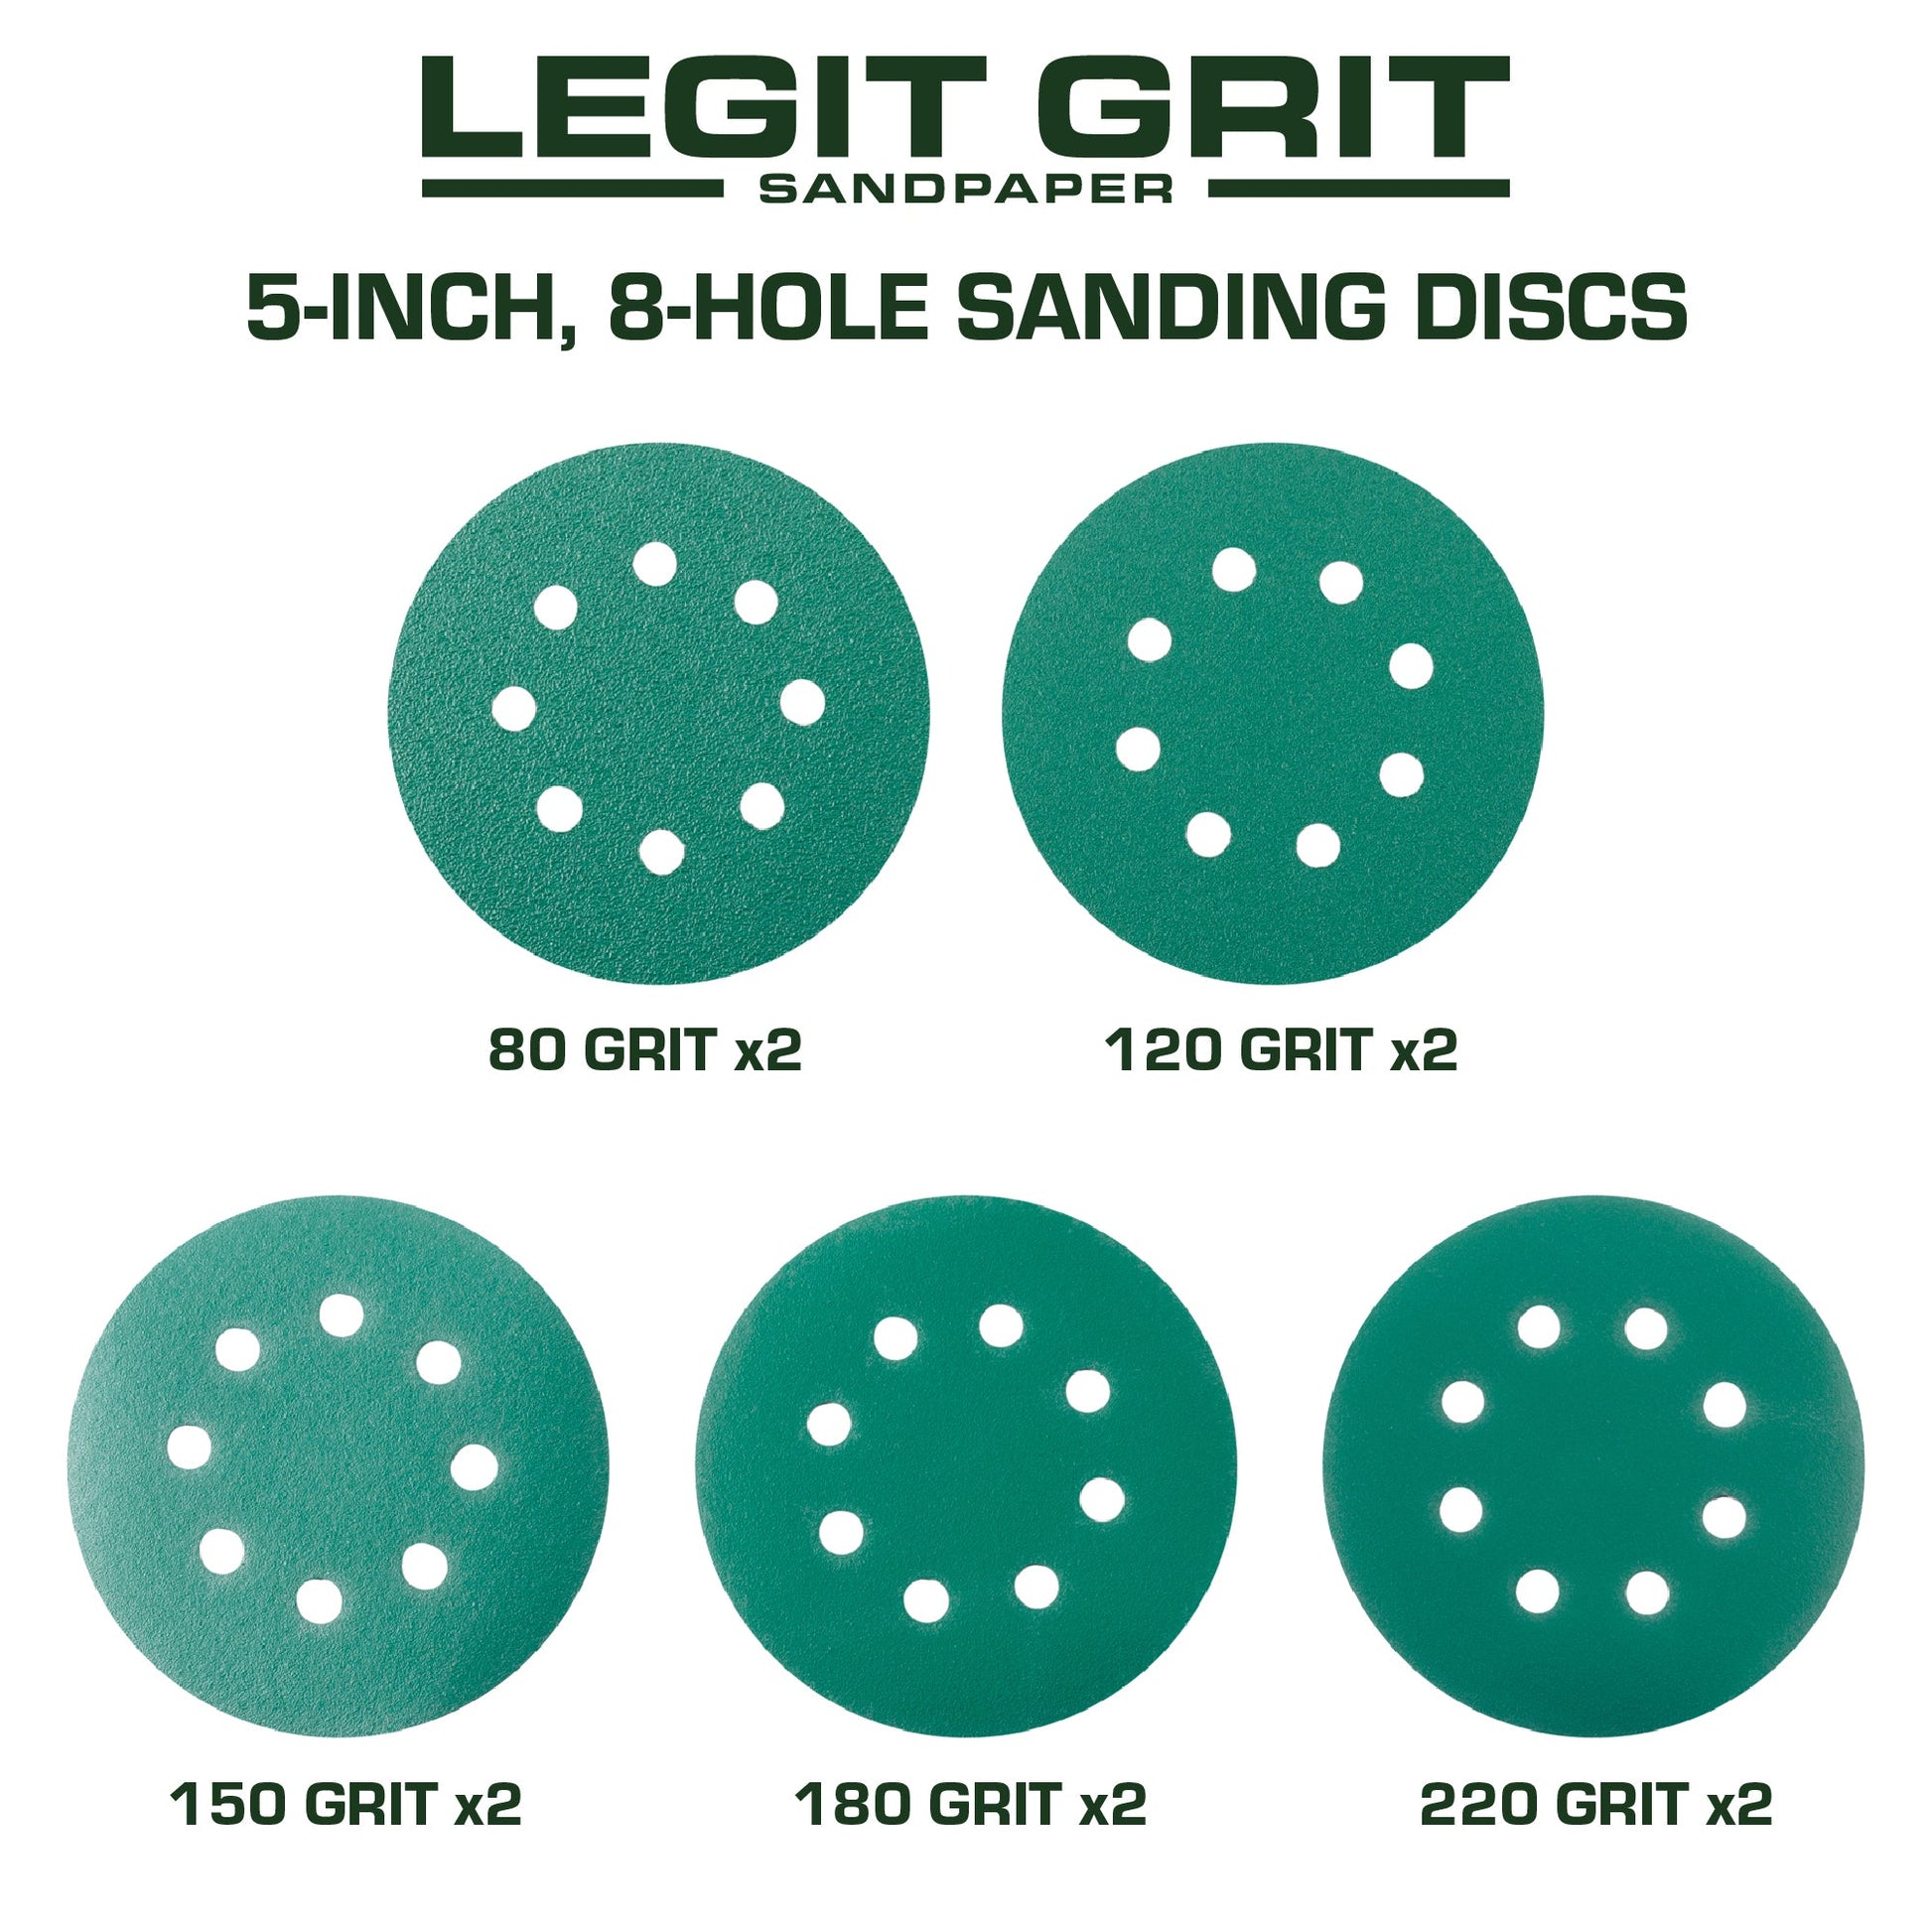 Hook & Loop Sanding Disc Sample Packs, Mixed Grit, 10-Pack - Legit Grit